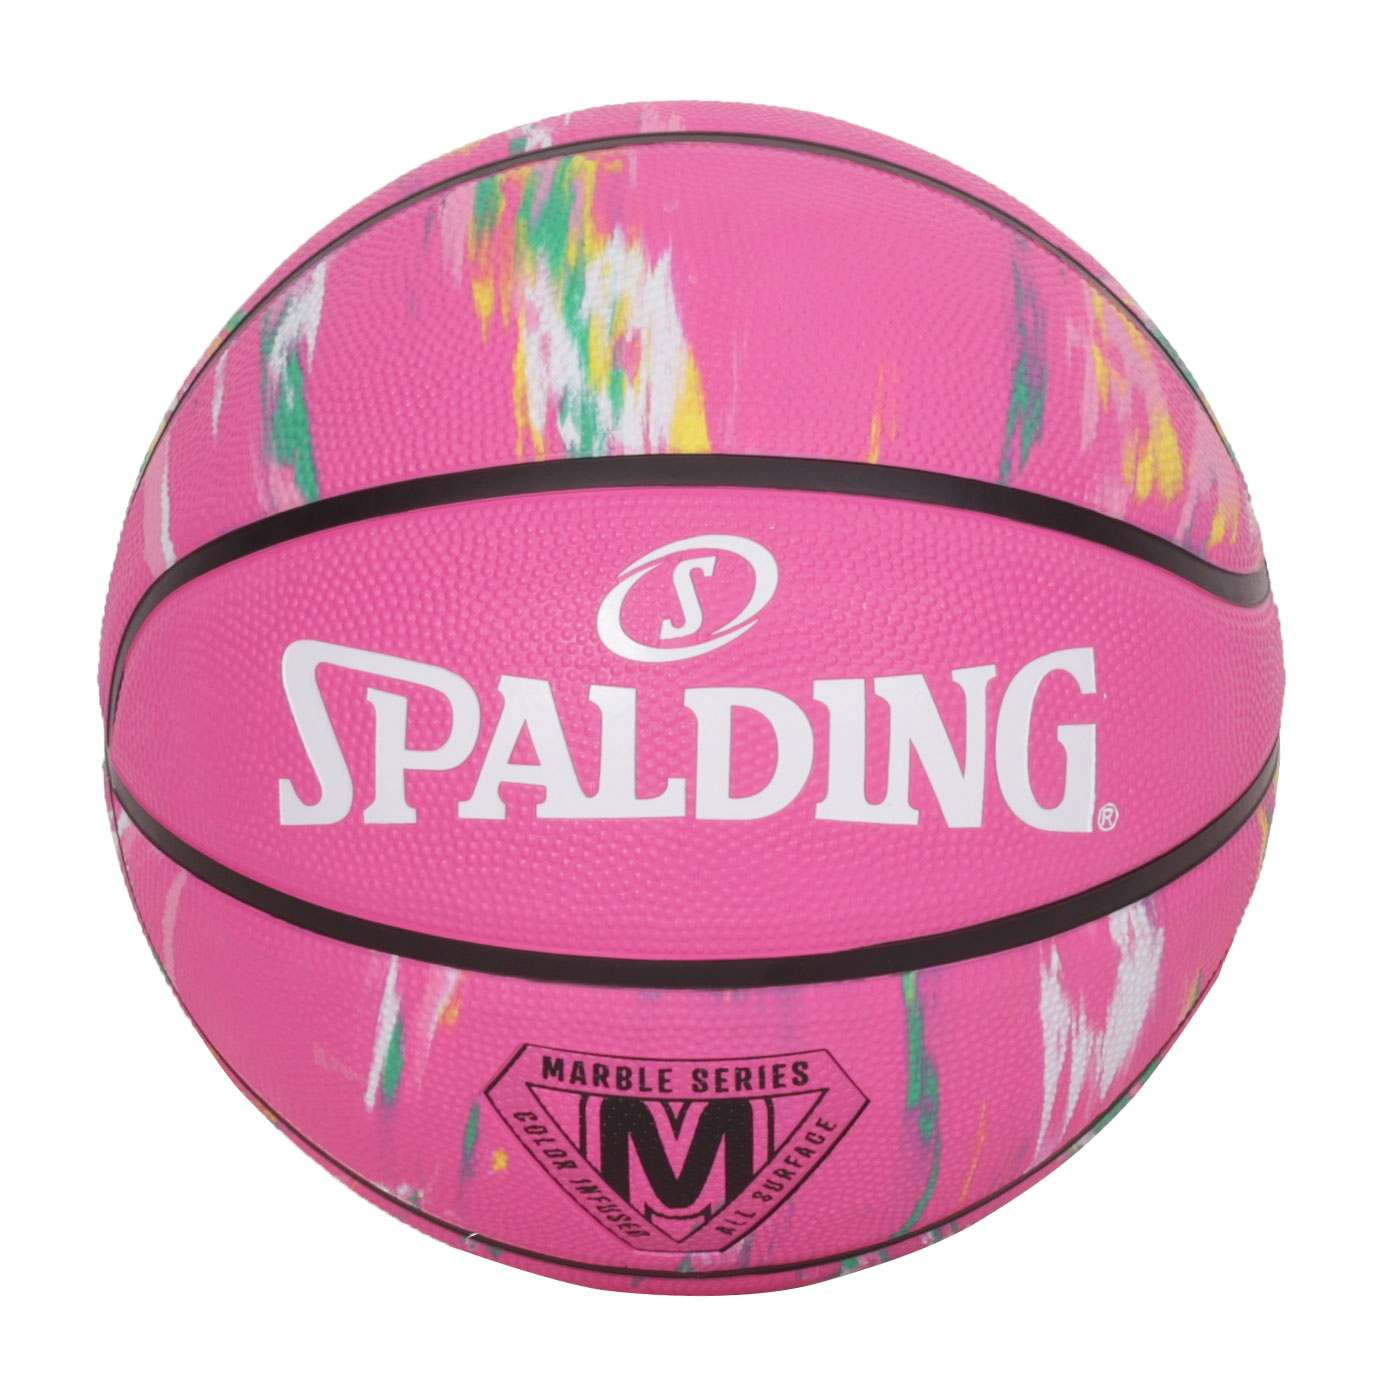 SPALDING 大理石系列粉彩#6橡膠籃球#40665  SPA84411 - 亮粉彩色